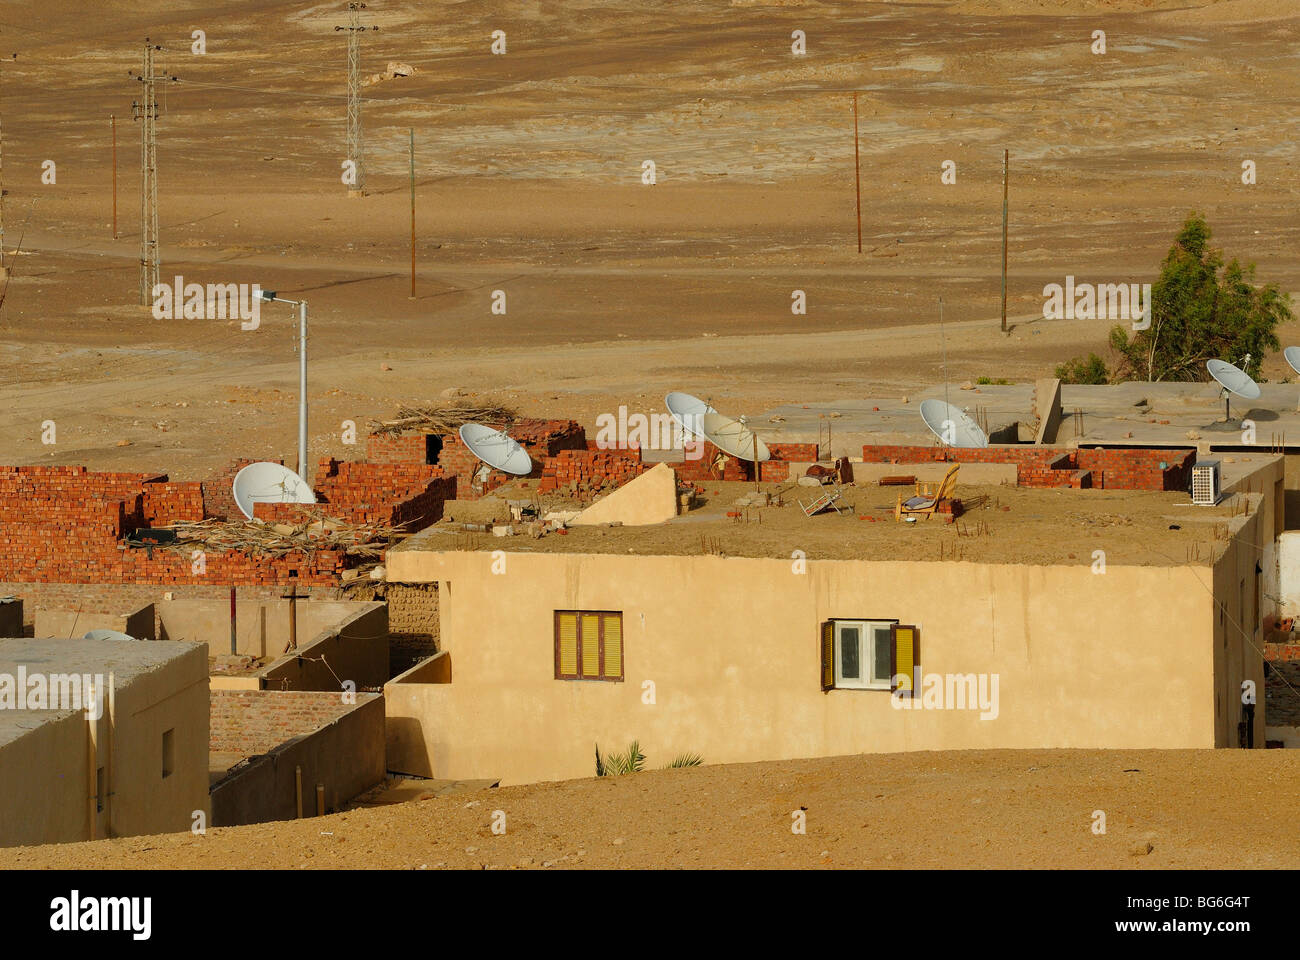 Stadt von Al Qasr in der Oase Dakhla, westlich von Ägypten Stockfoto